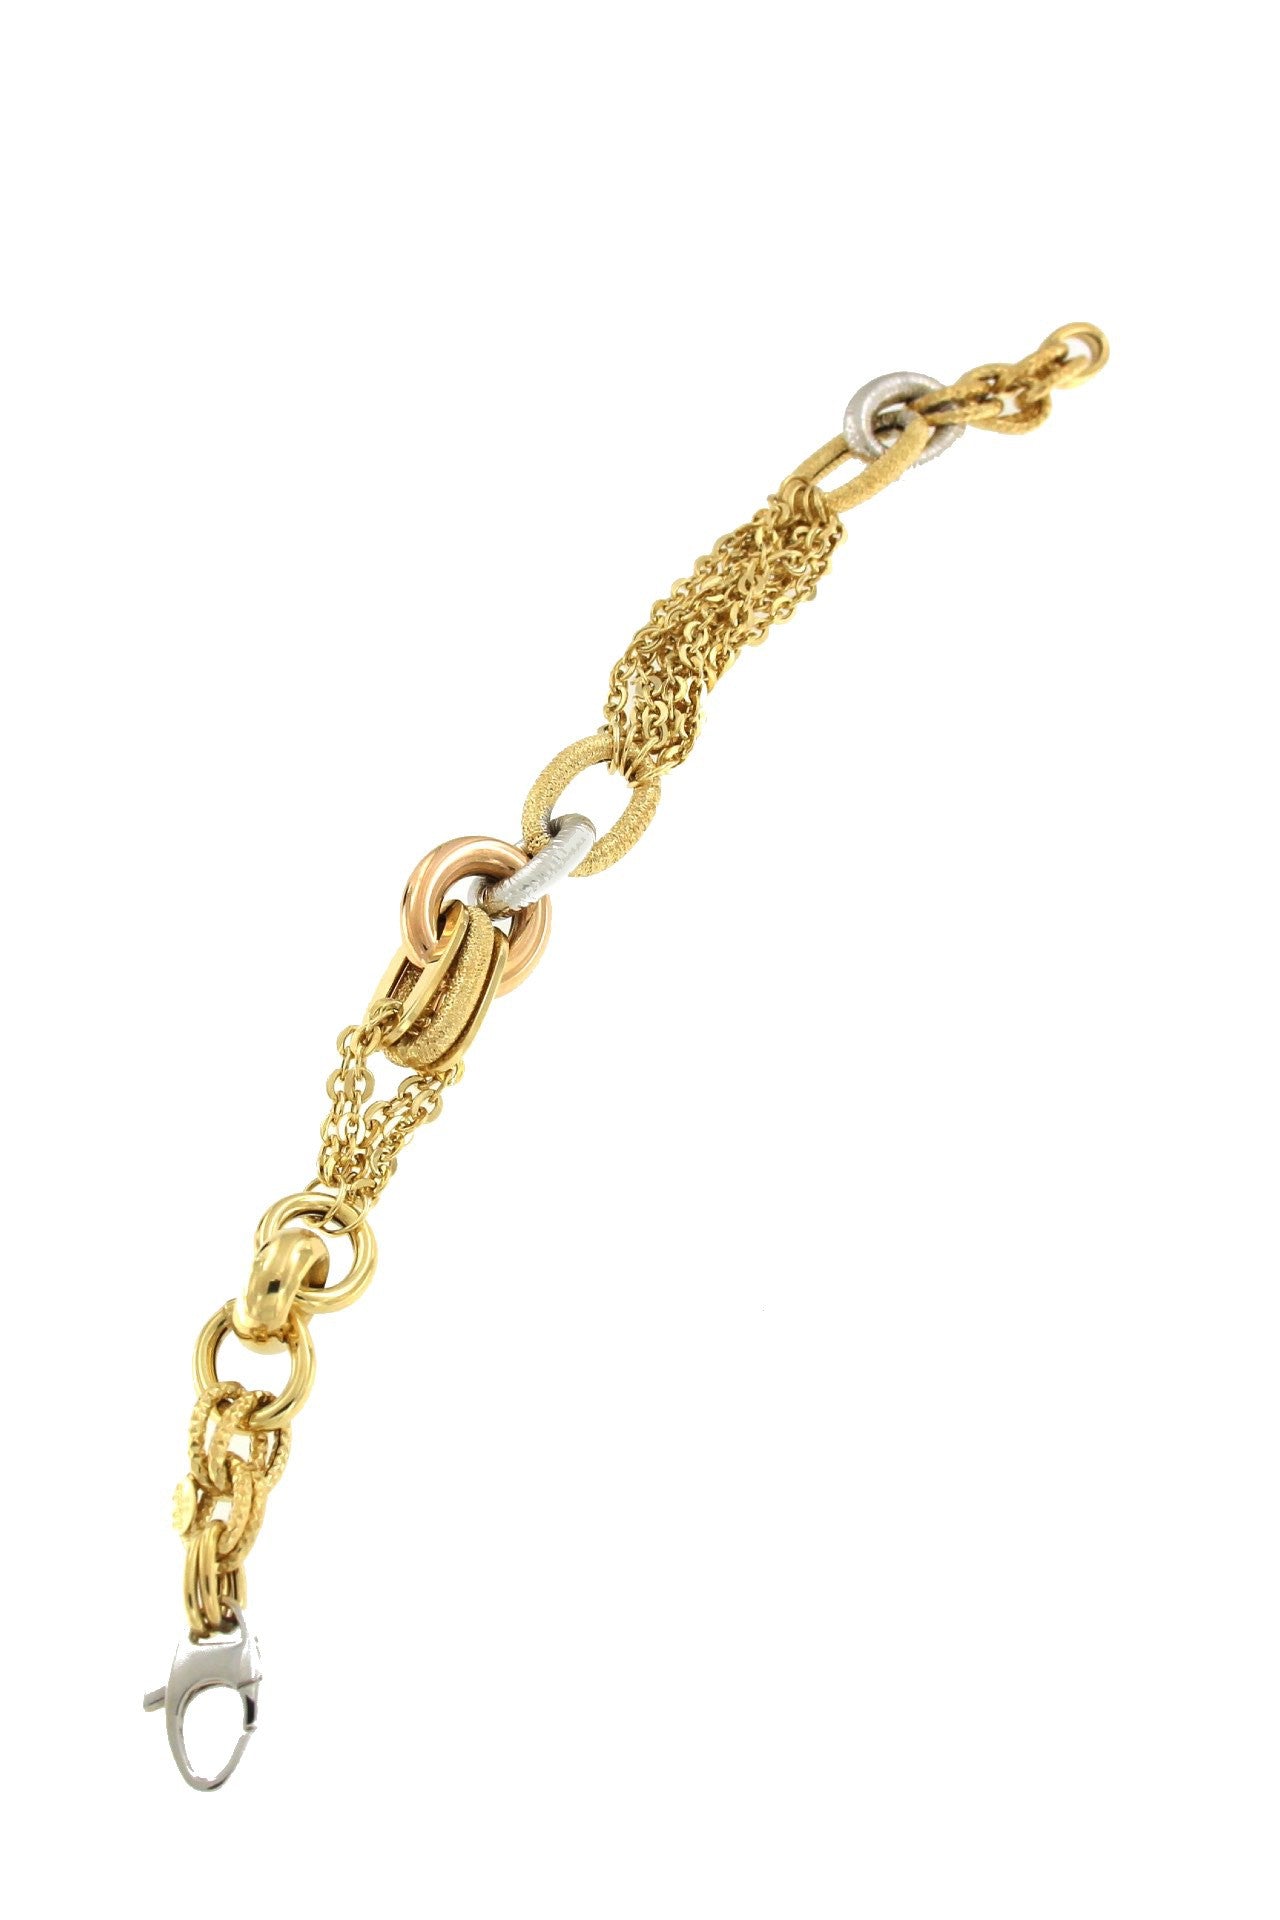 Pulsera ASLAN de oro en tres colores de varios tipos de eslabones de cadenas - Roman Joyero